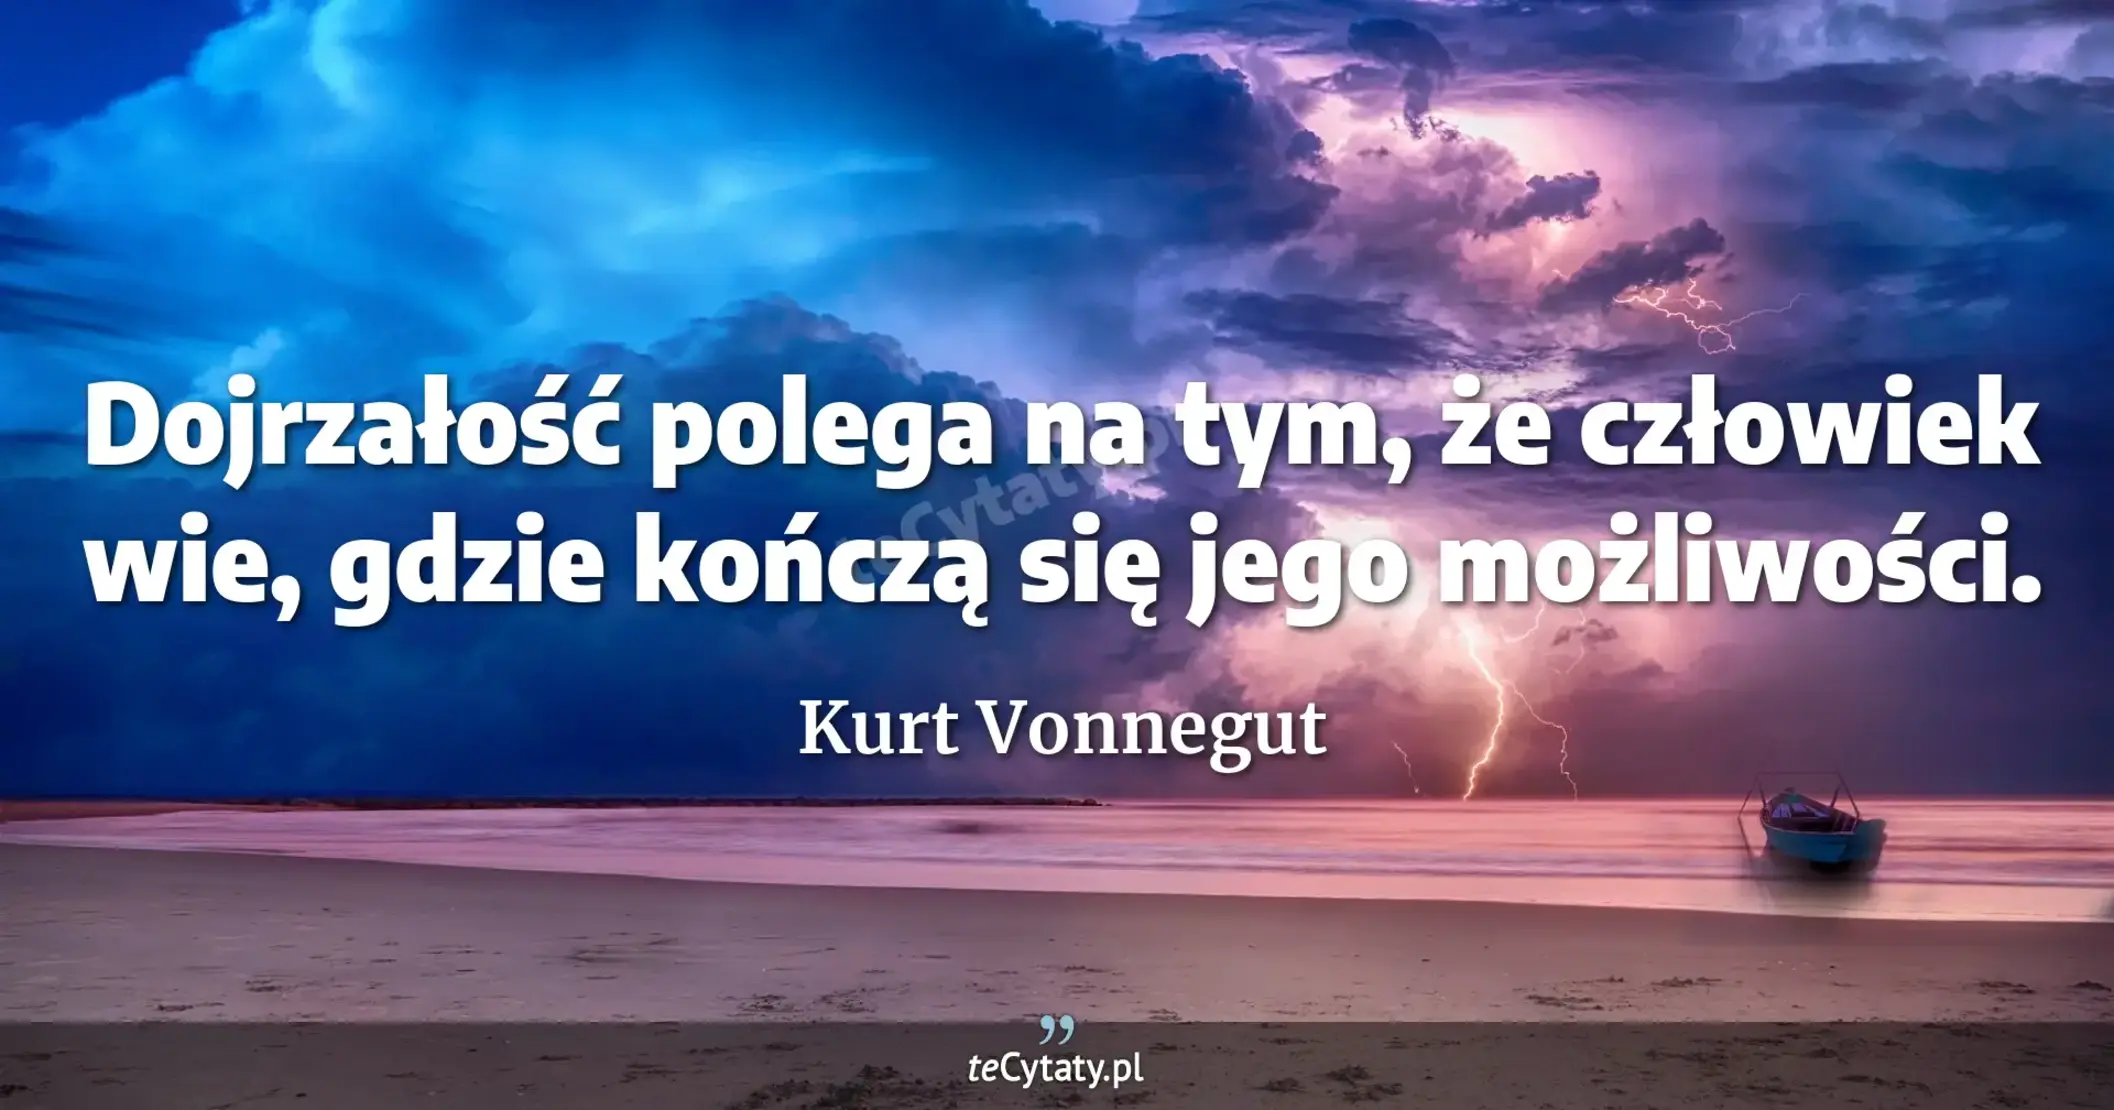 Dojrzałość polega na tym, że człowiek wie, gdzie kończą się jego możliwości. - Kurt Vonnegut